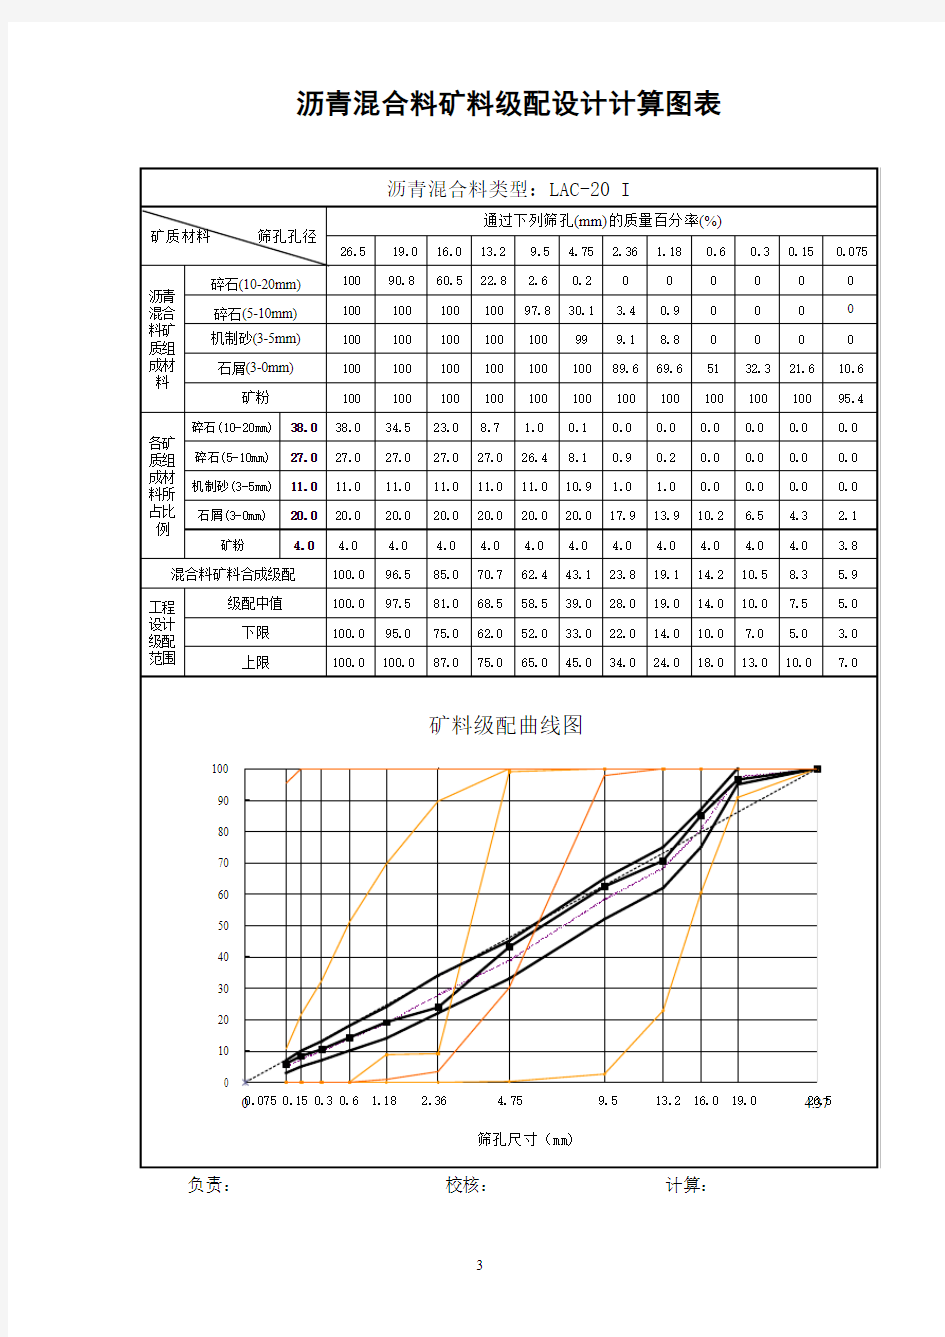 沥青混合料配合比设计矿料级配图表(LAC-20I)